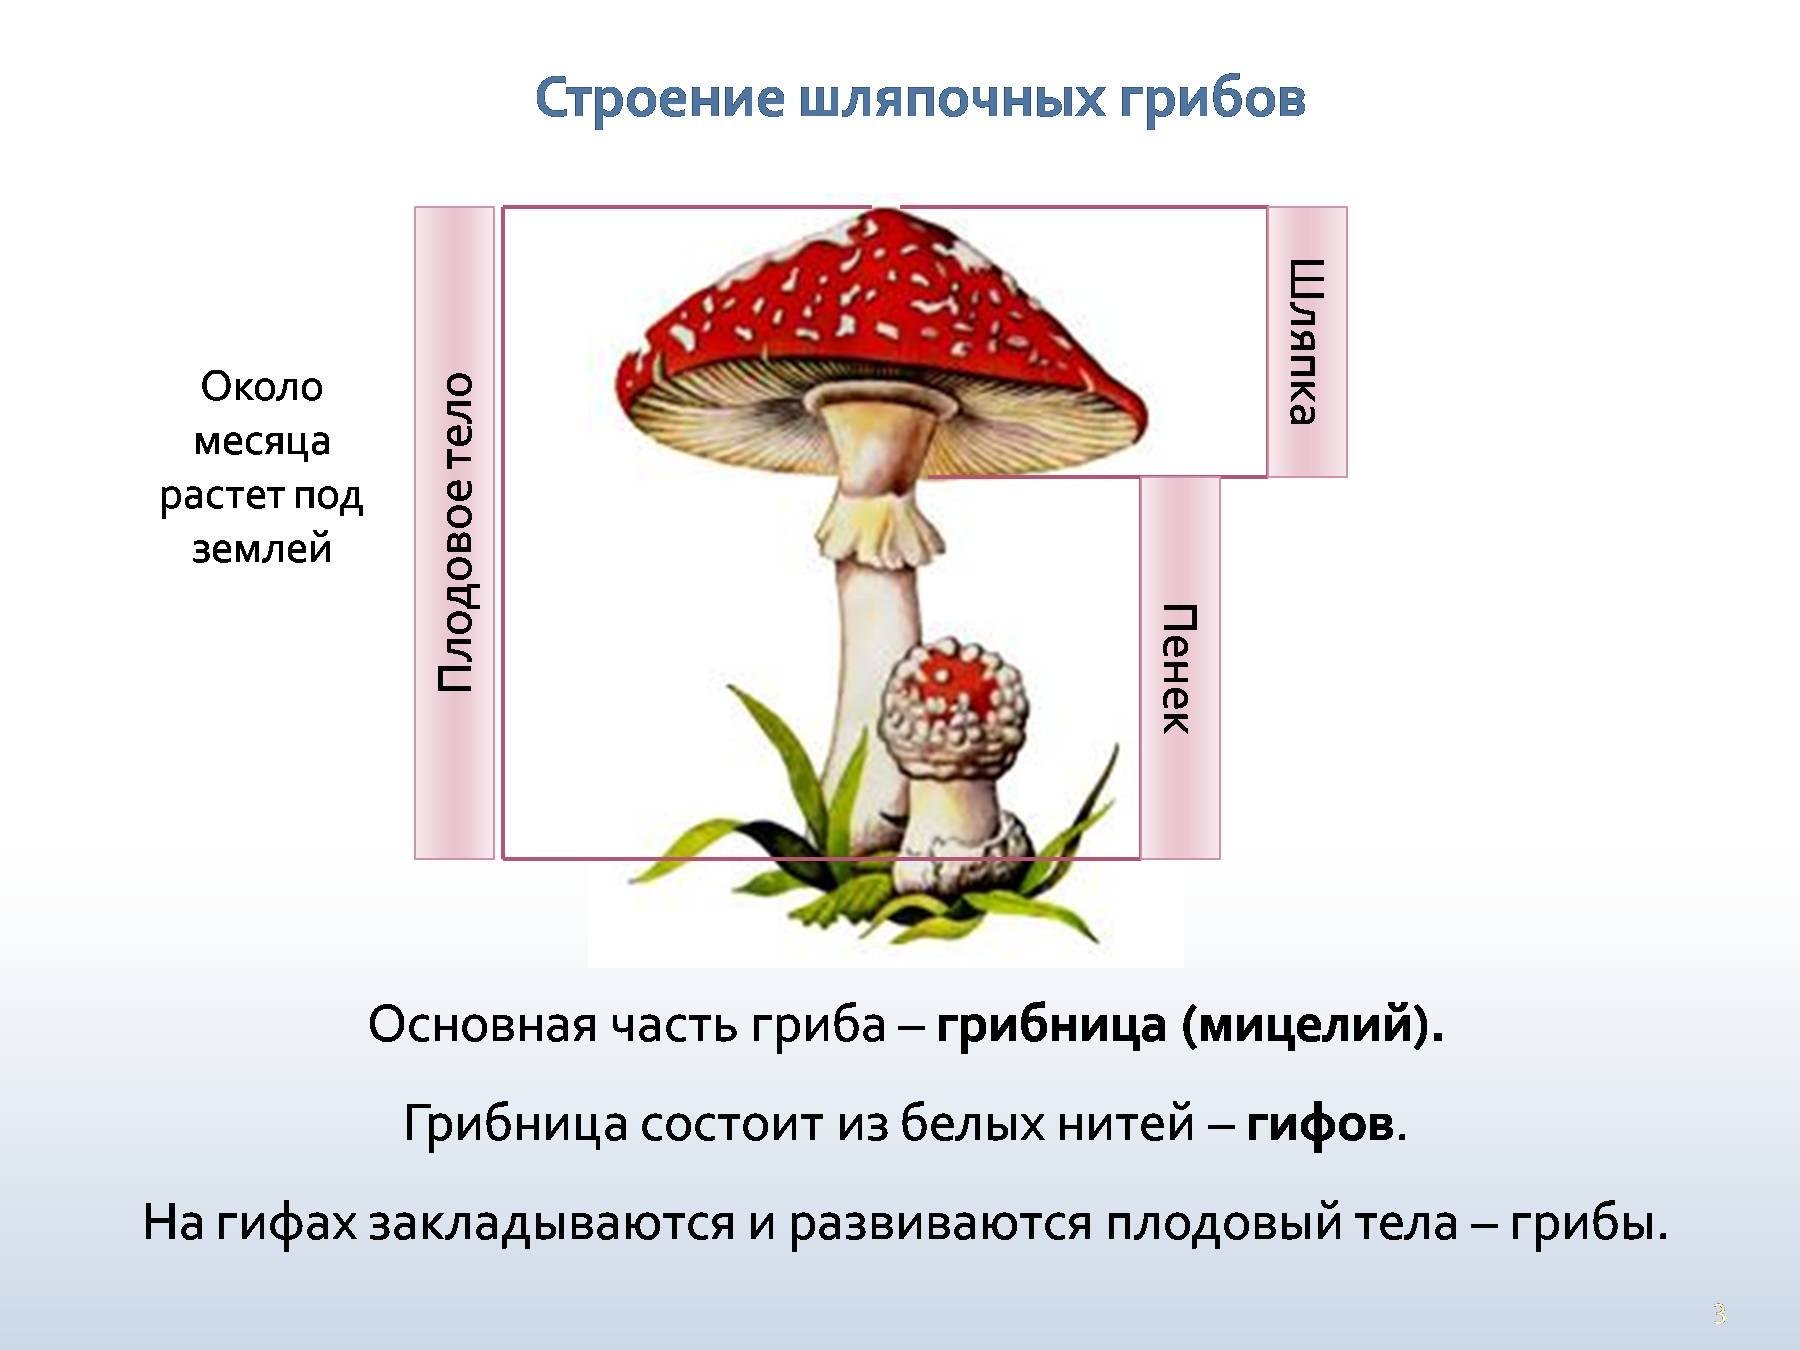 Главной частью шляпочного гриба является. Грибы строение шляпочных грибов. Строение мухомора грибница гриба. Строение шляпочного гриба мухомора. Строение шляпочного гриба 5.